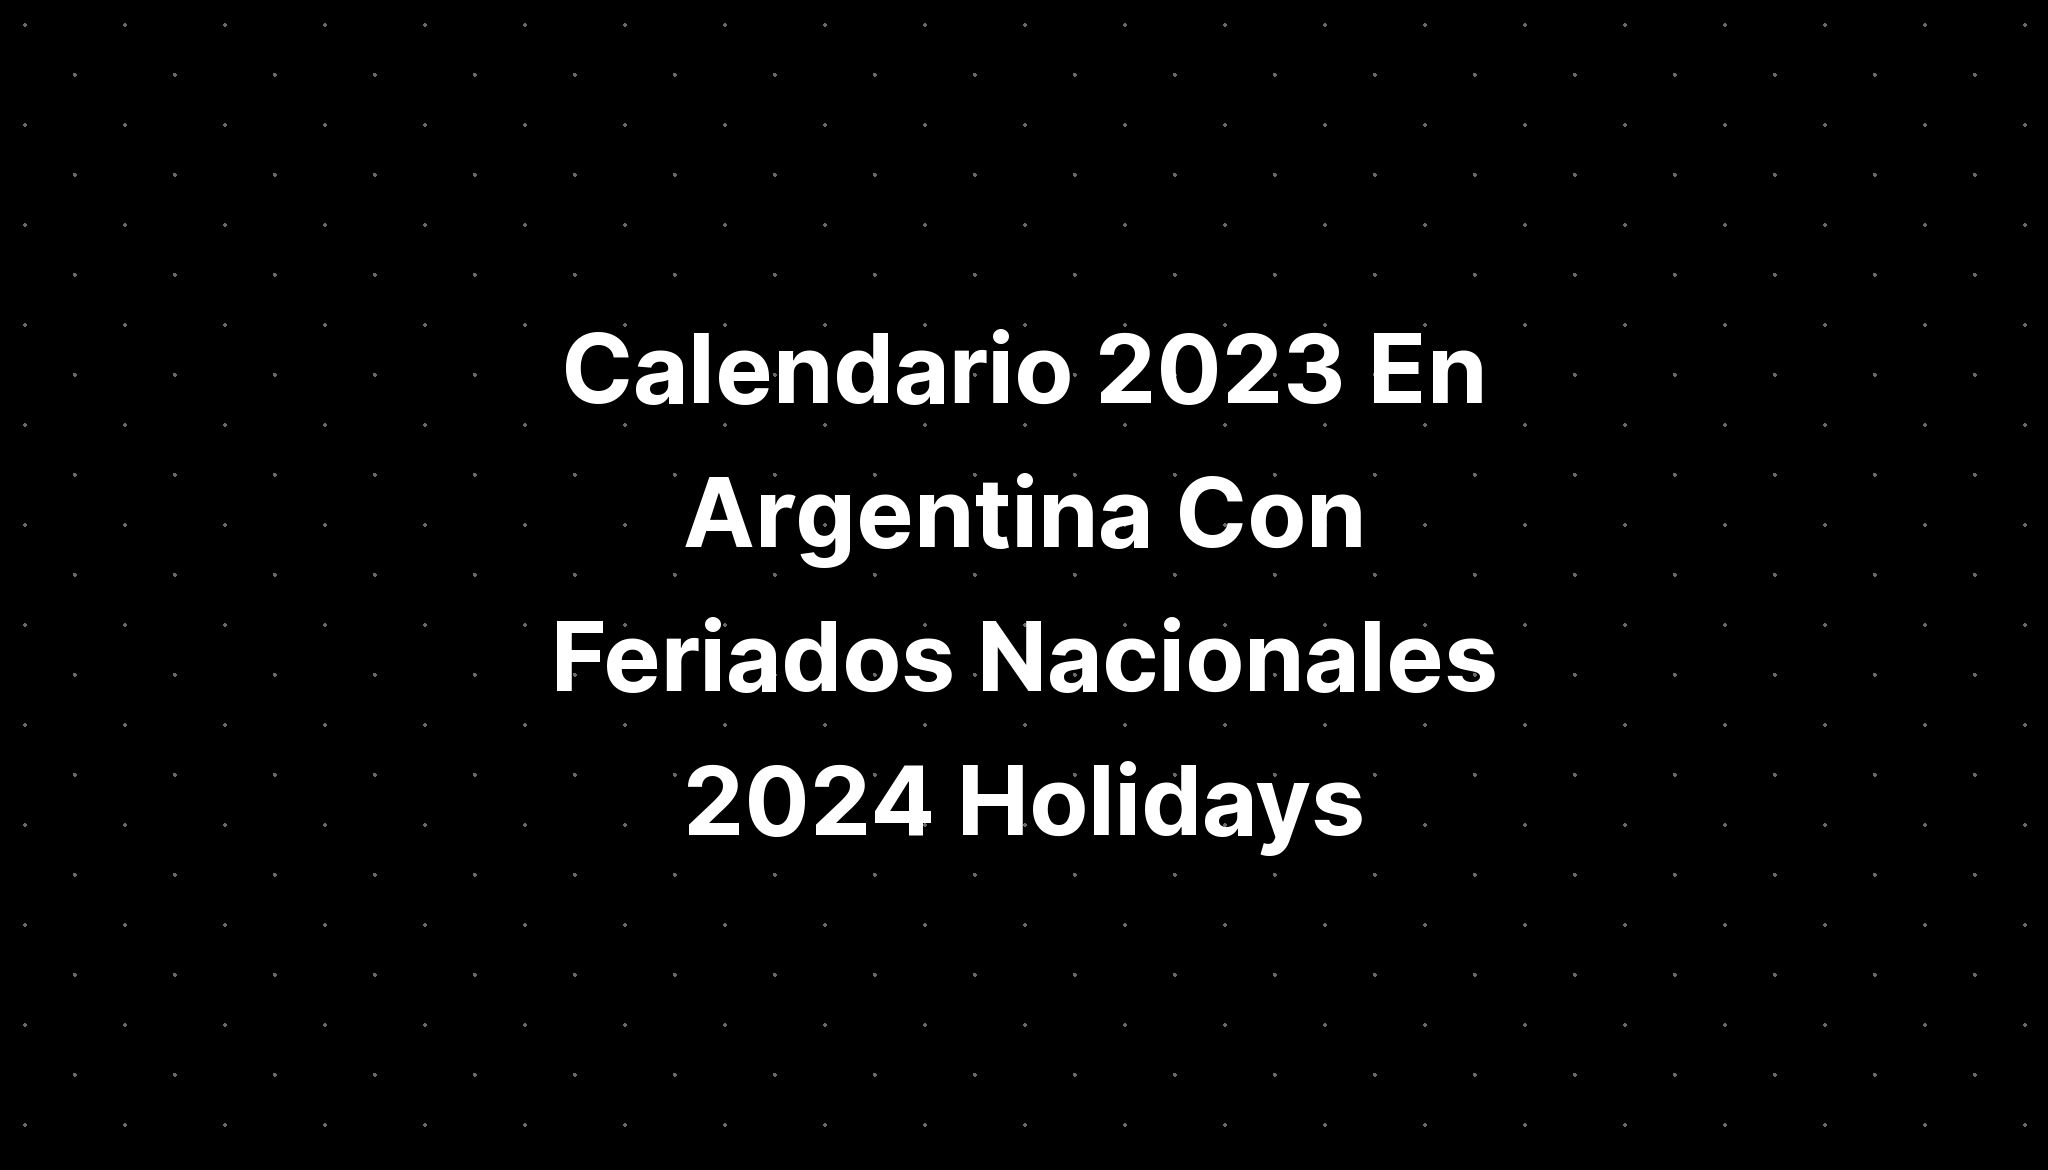 Calendario 2023 En Argentina Con Feriados Nacionales 2024 Holidays